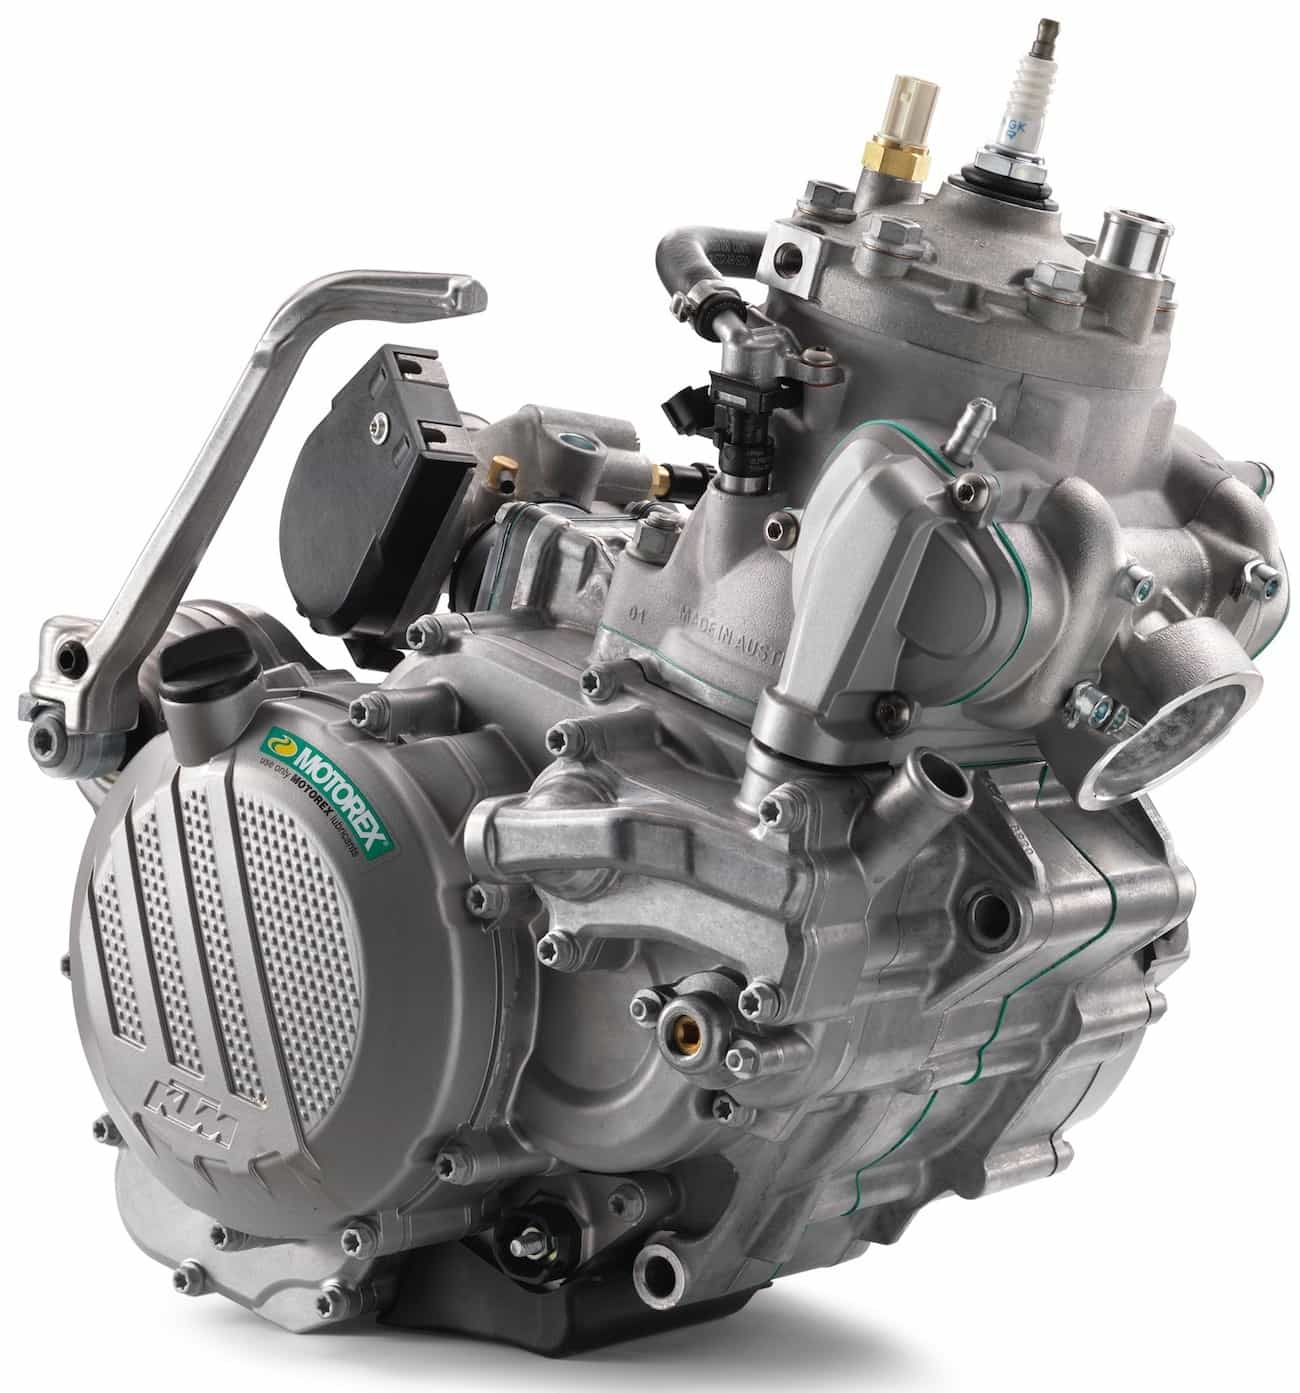 176958_KTM XC-W TPI Engine MY 2018 studio